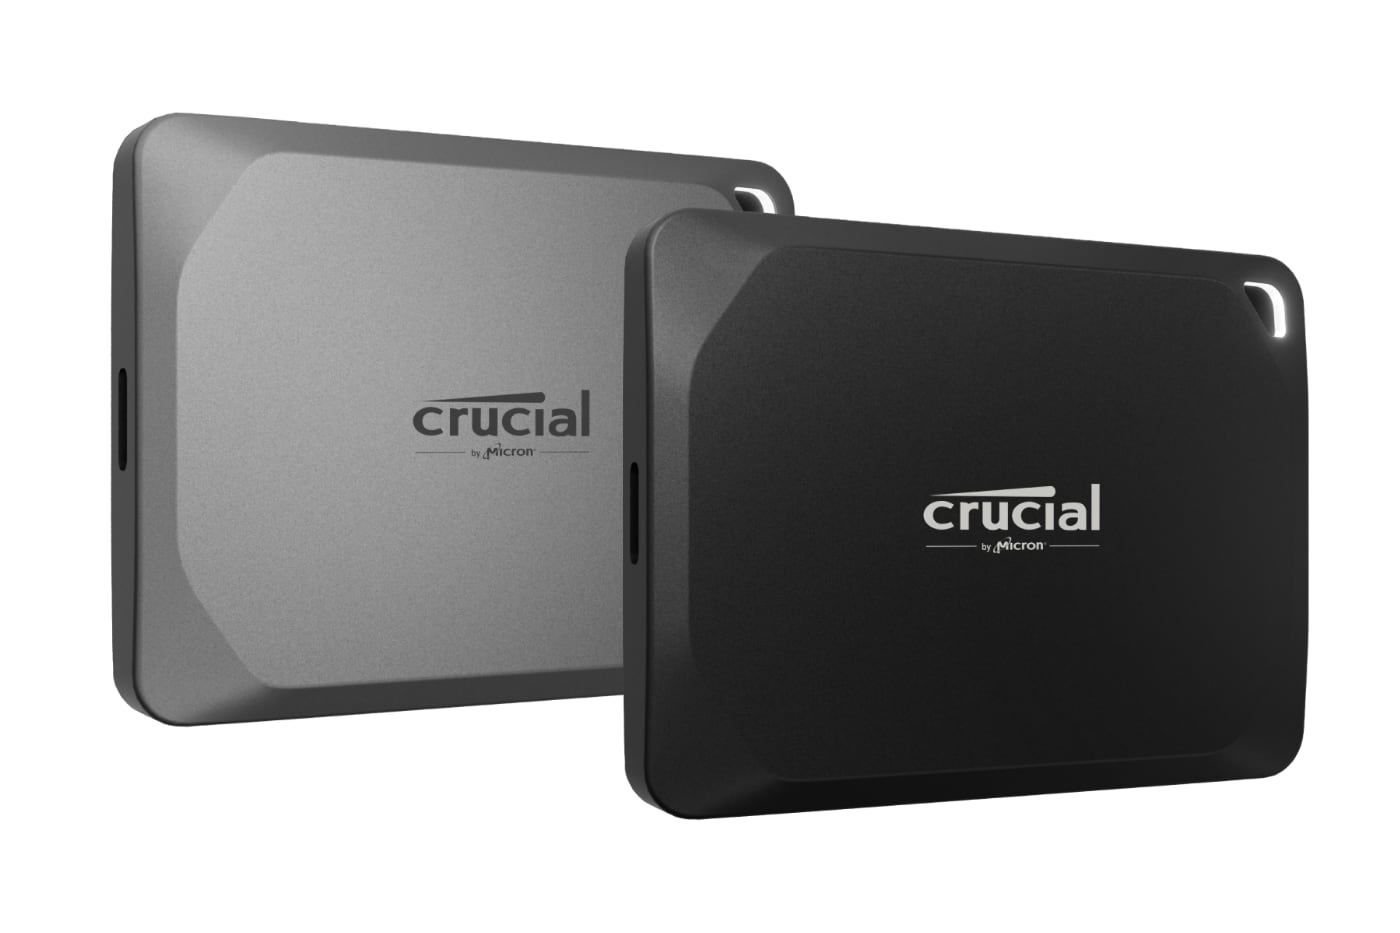 Crucial X9 Pro (1050 Mo/s) et X10 Pro (2100 Mo/s) : deux SSD